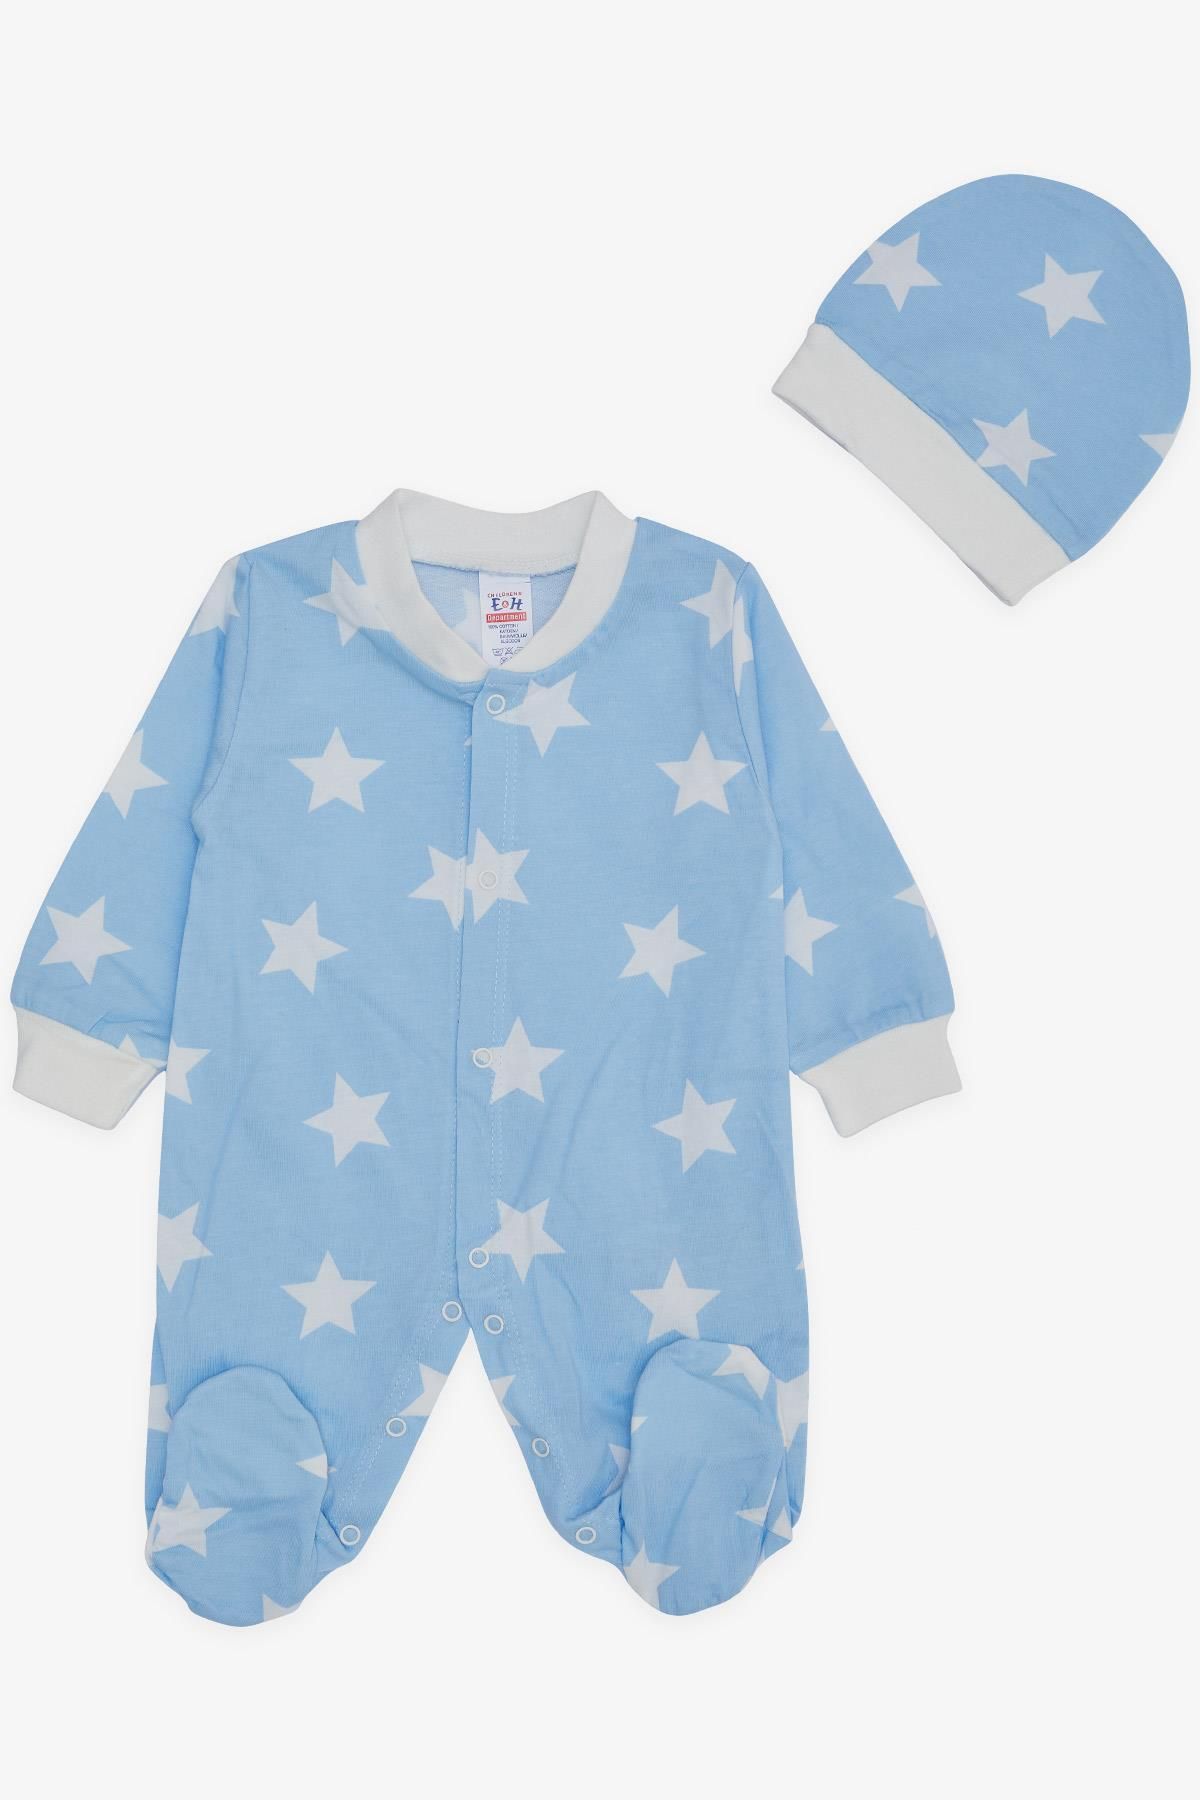 Breeze Erkek Bebek Patikli Tulum Yıldız Desenli 0-6 Ay, Bebe Mavisi